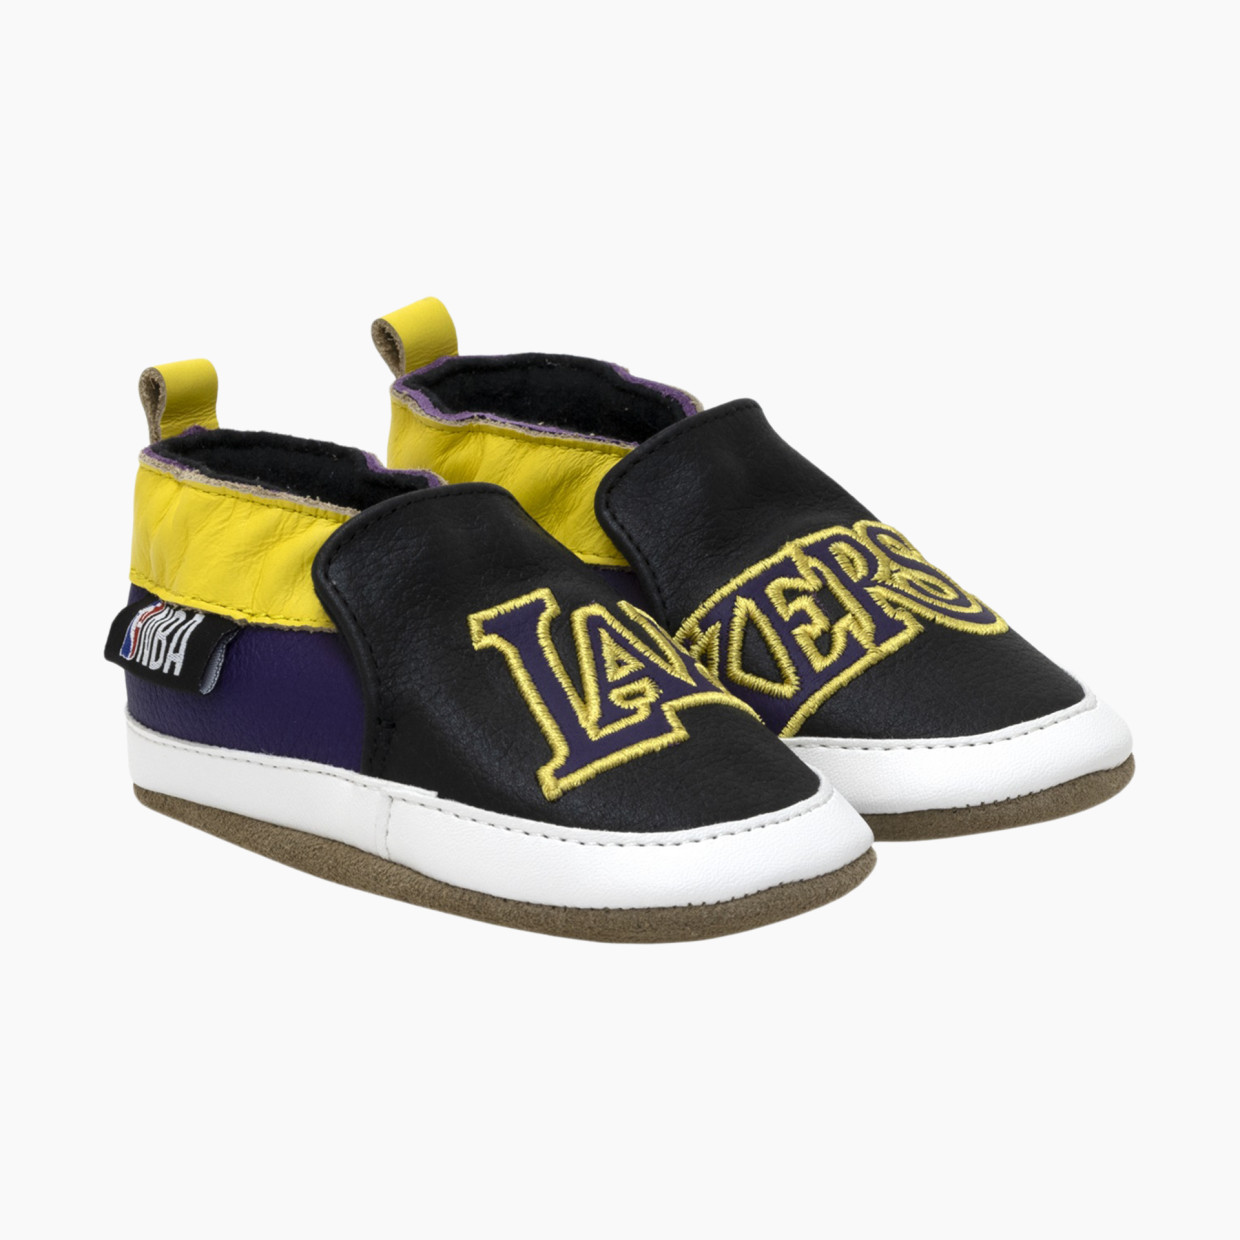 Robeez Lakers Shoes - Black, 6-12 M.